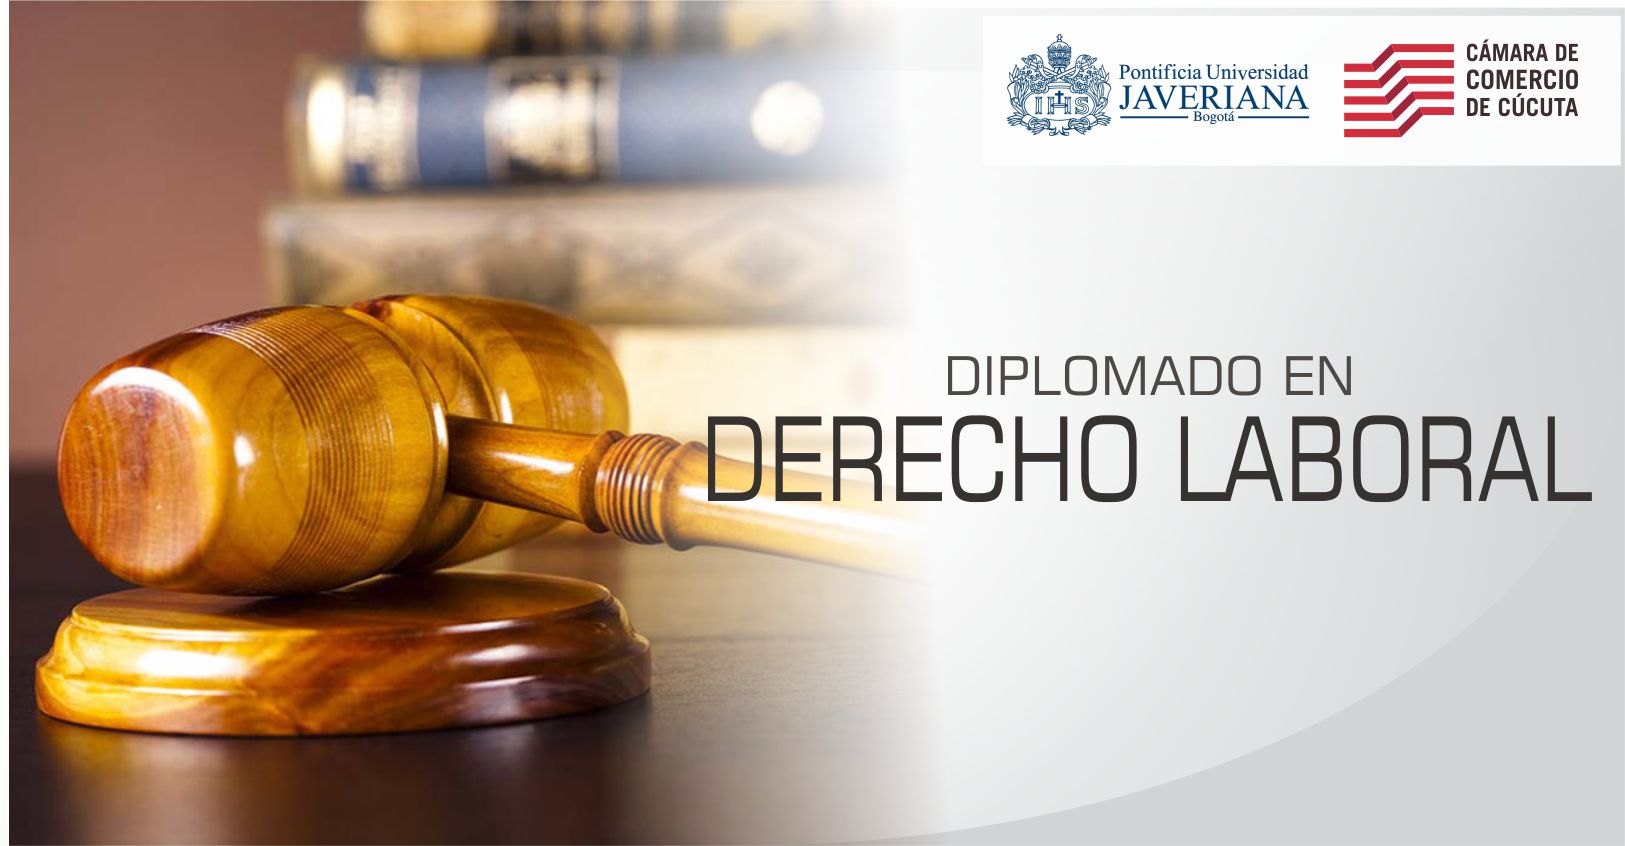 Universidad Javeriana Presenta Diplomado en Derecho Laboral